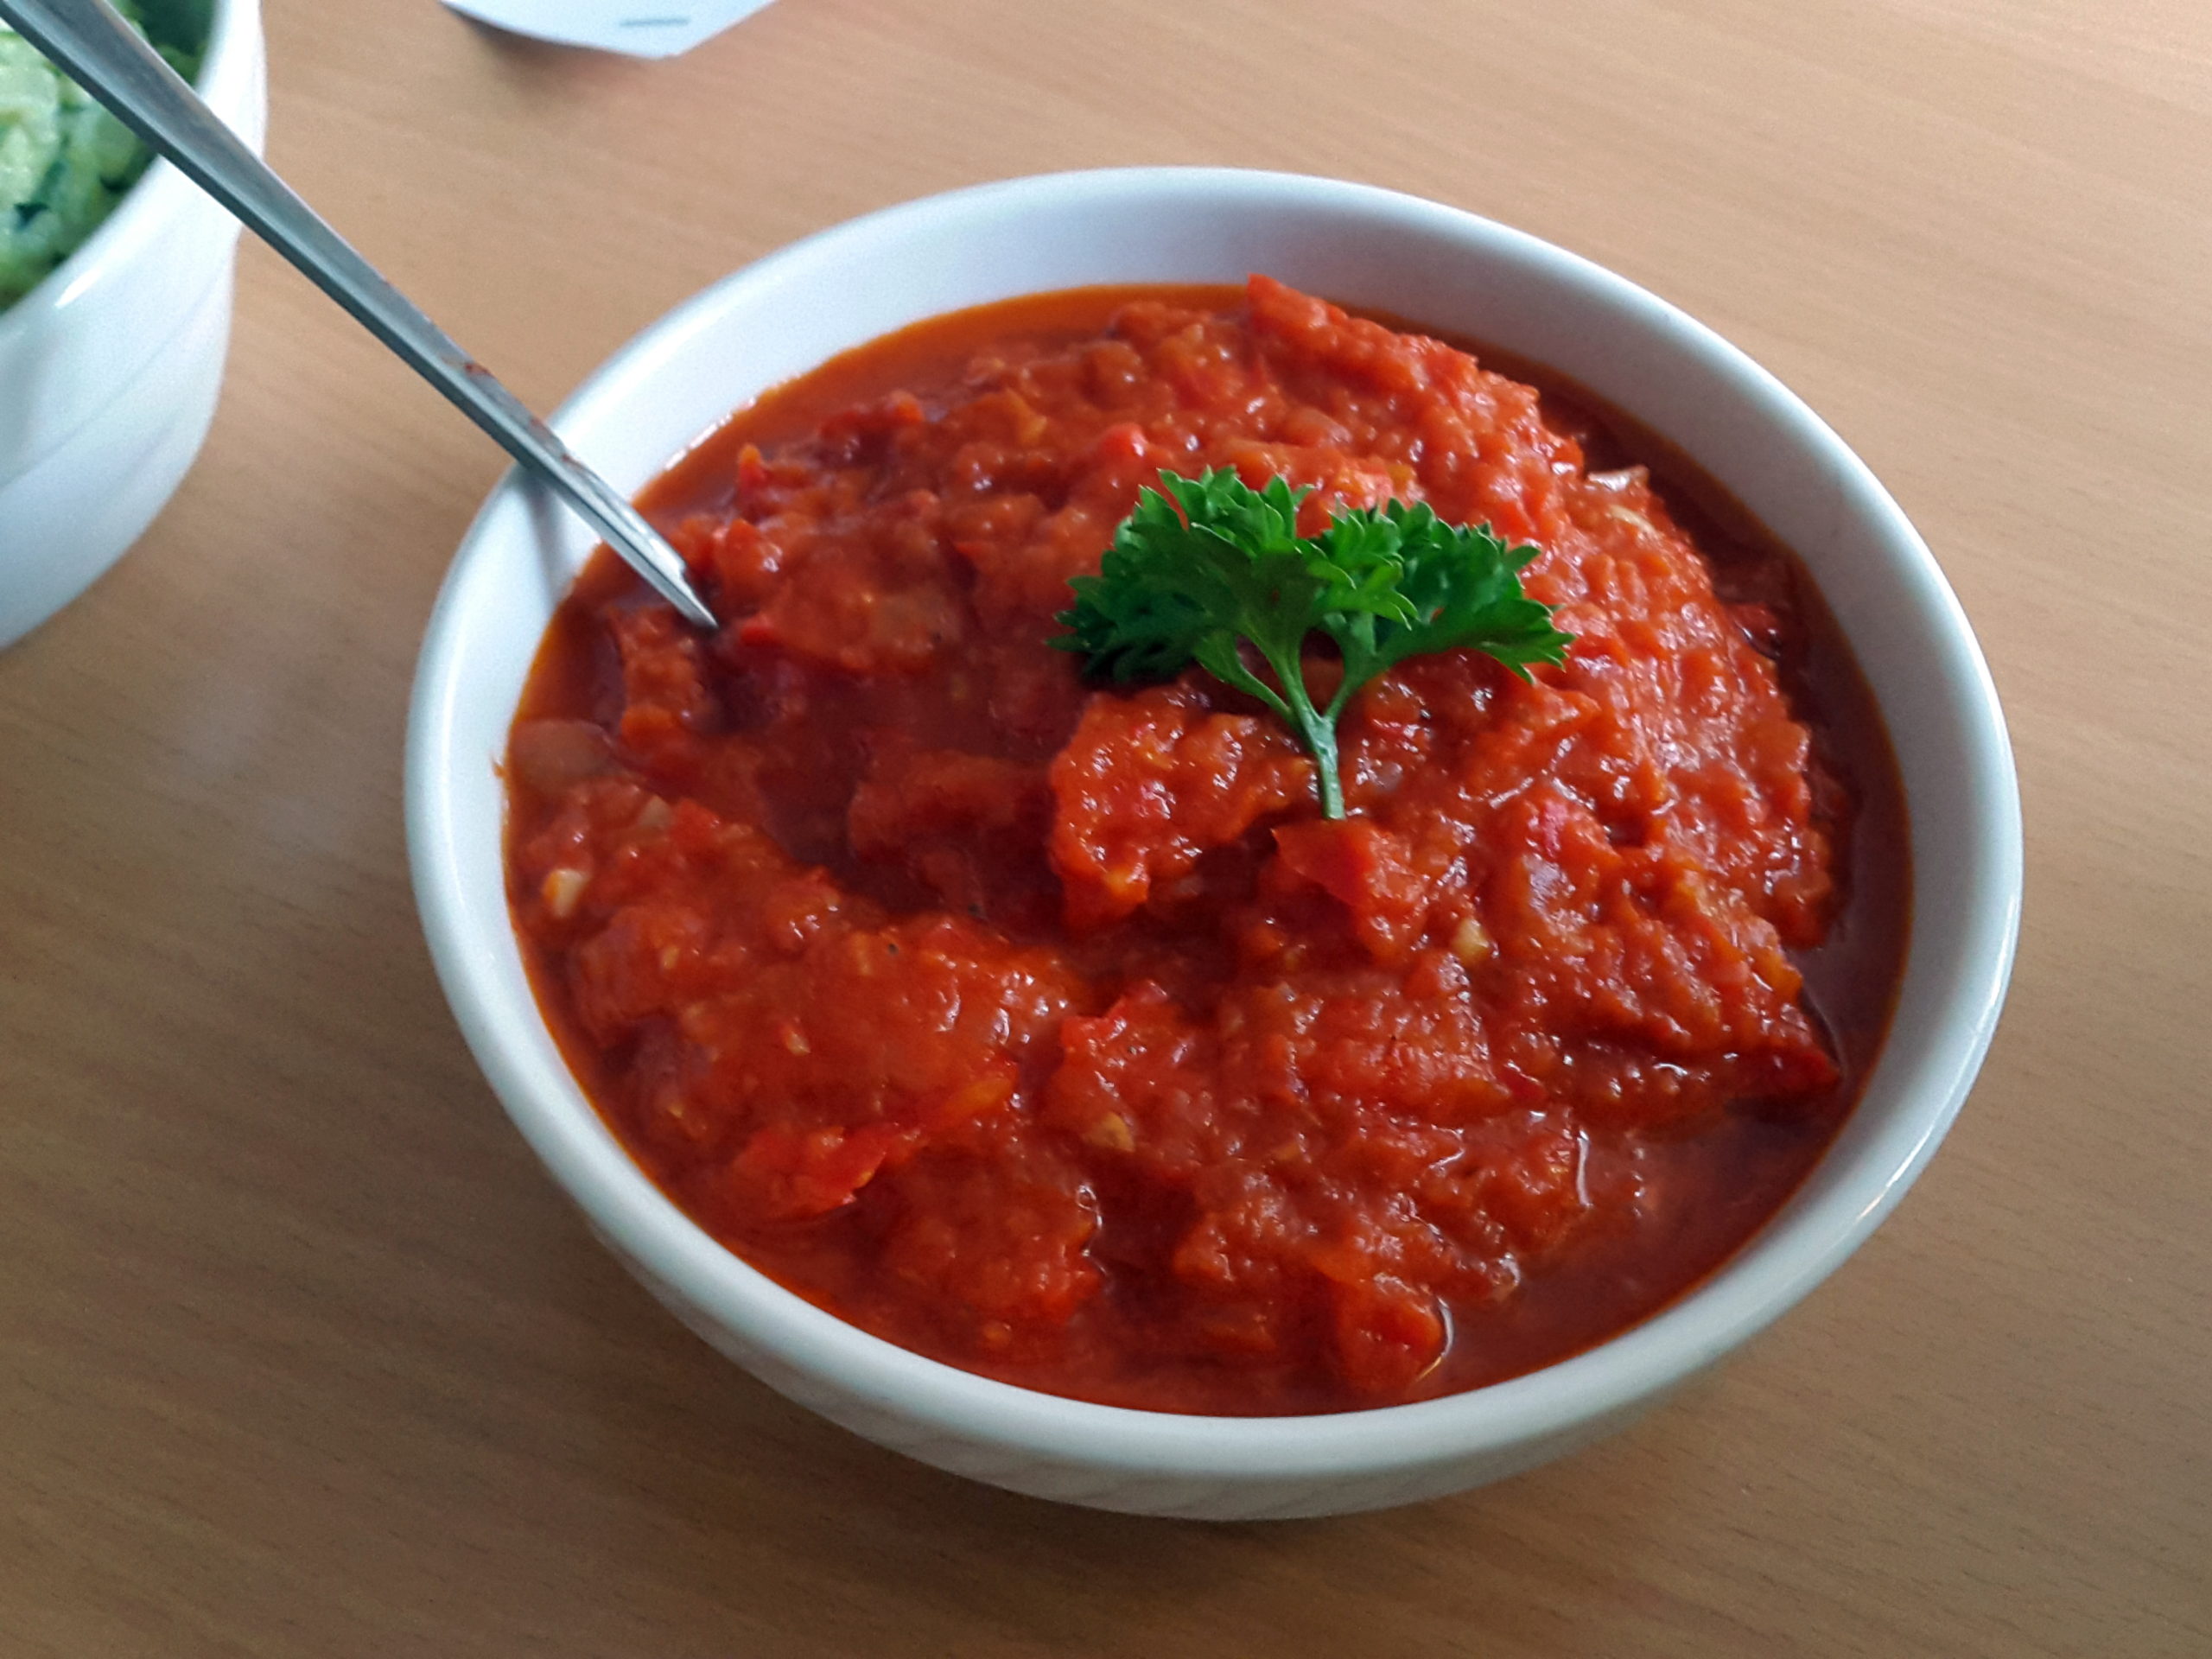 Feuriger Paprika-Dip selbst gemacht - Grillsaucen homemade